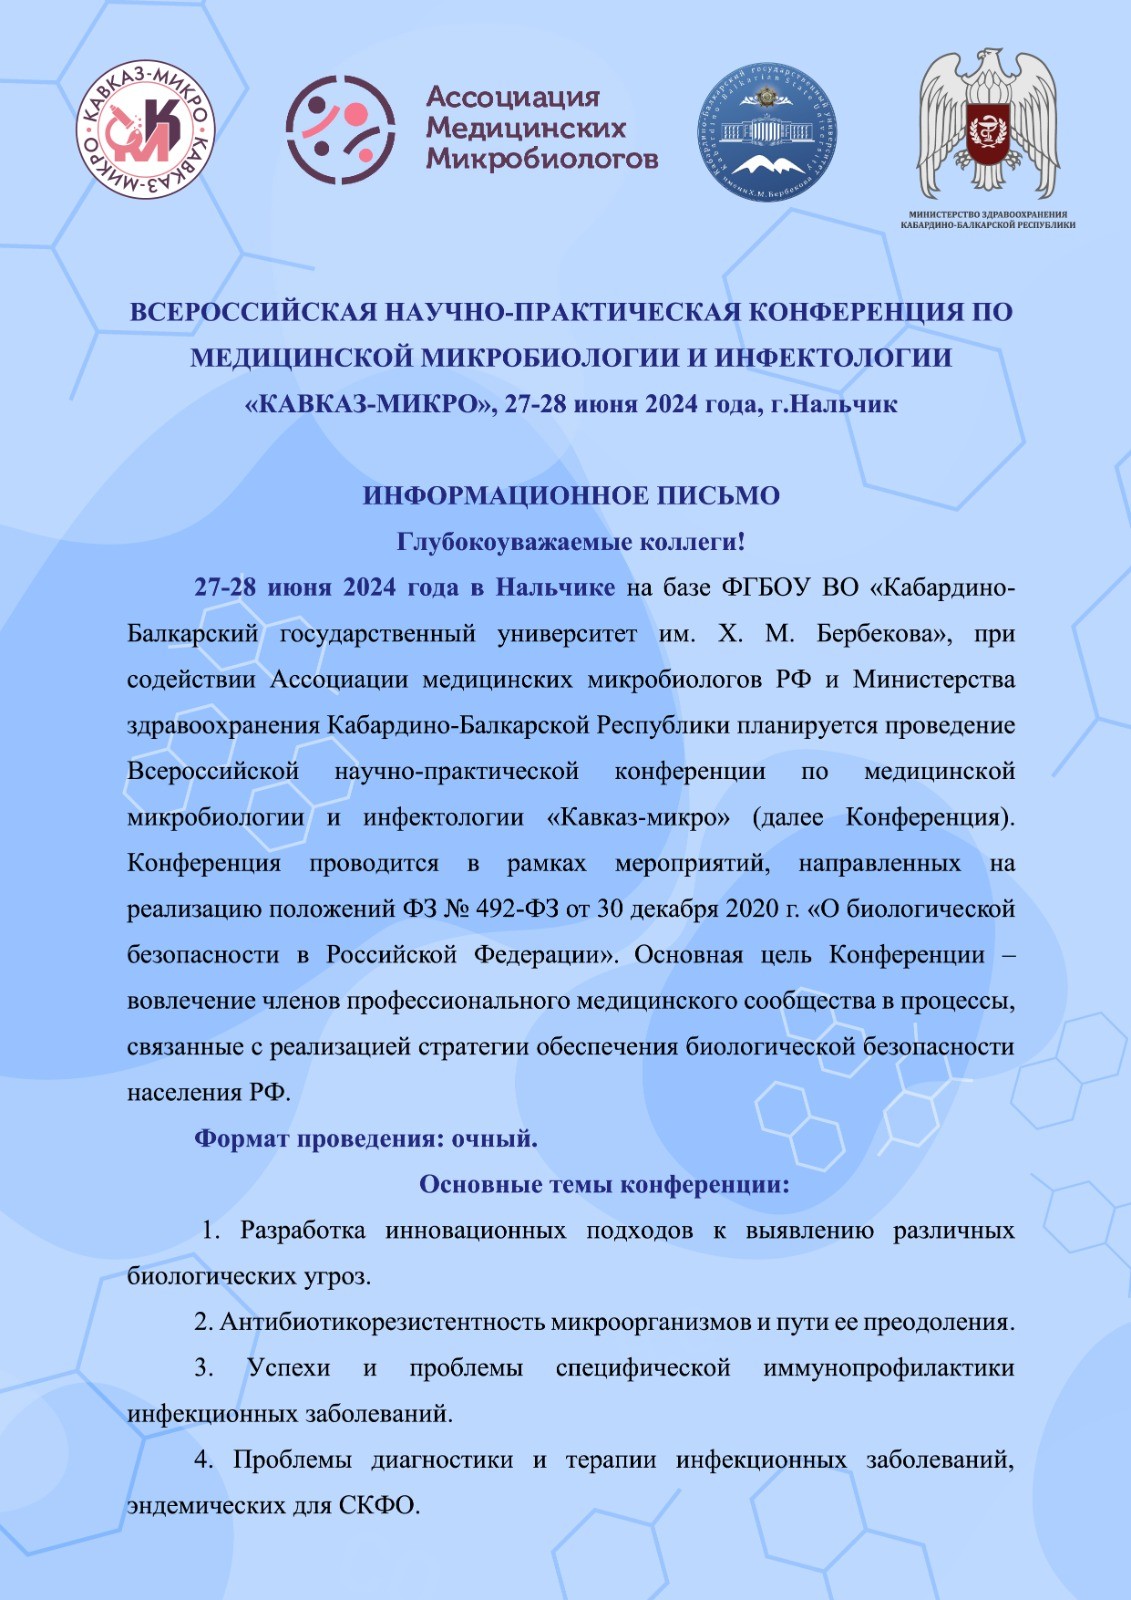 27-28 июня 2024 года - Всероссийская научно-практическая конференция по медицинской микробиологии и инфектологии «Кавказ-Микро»